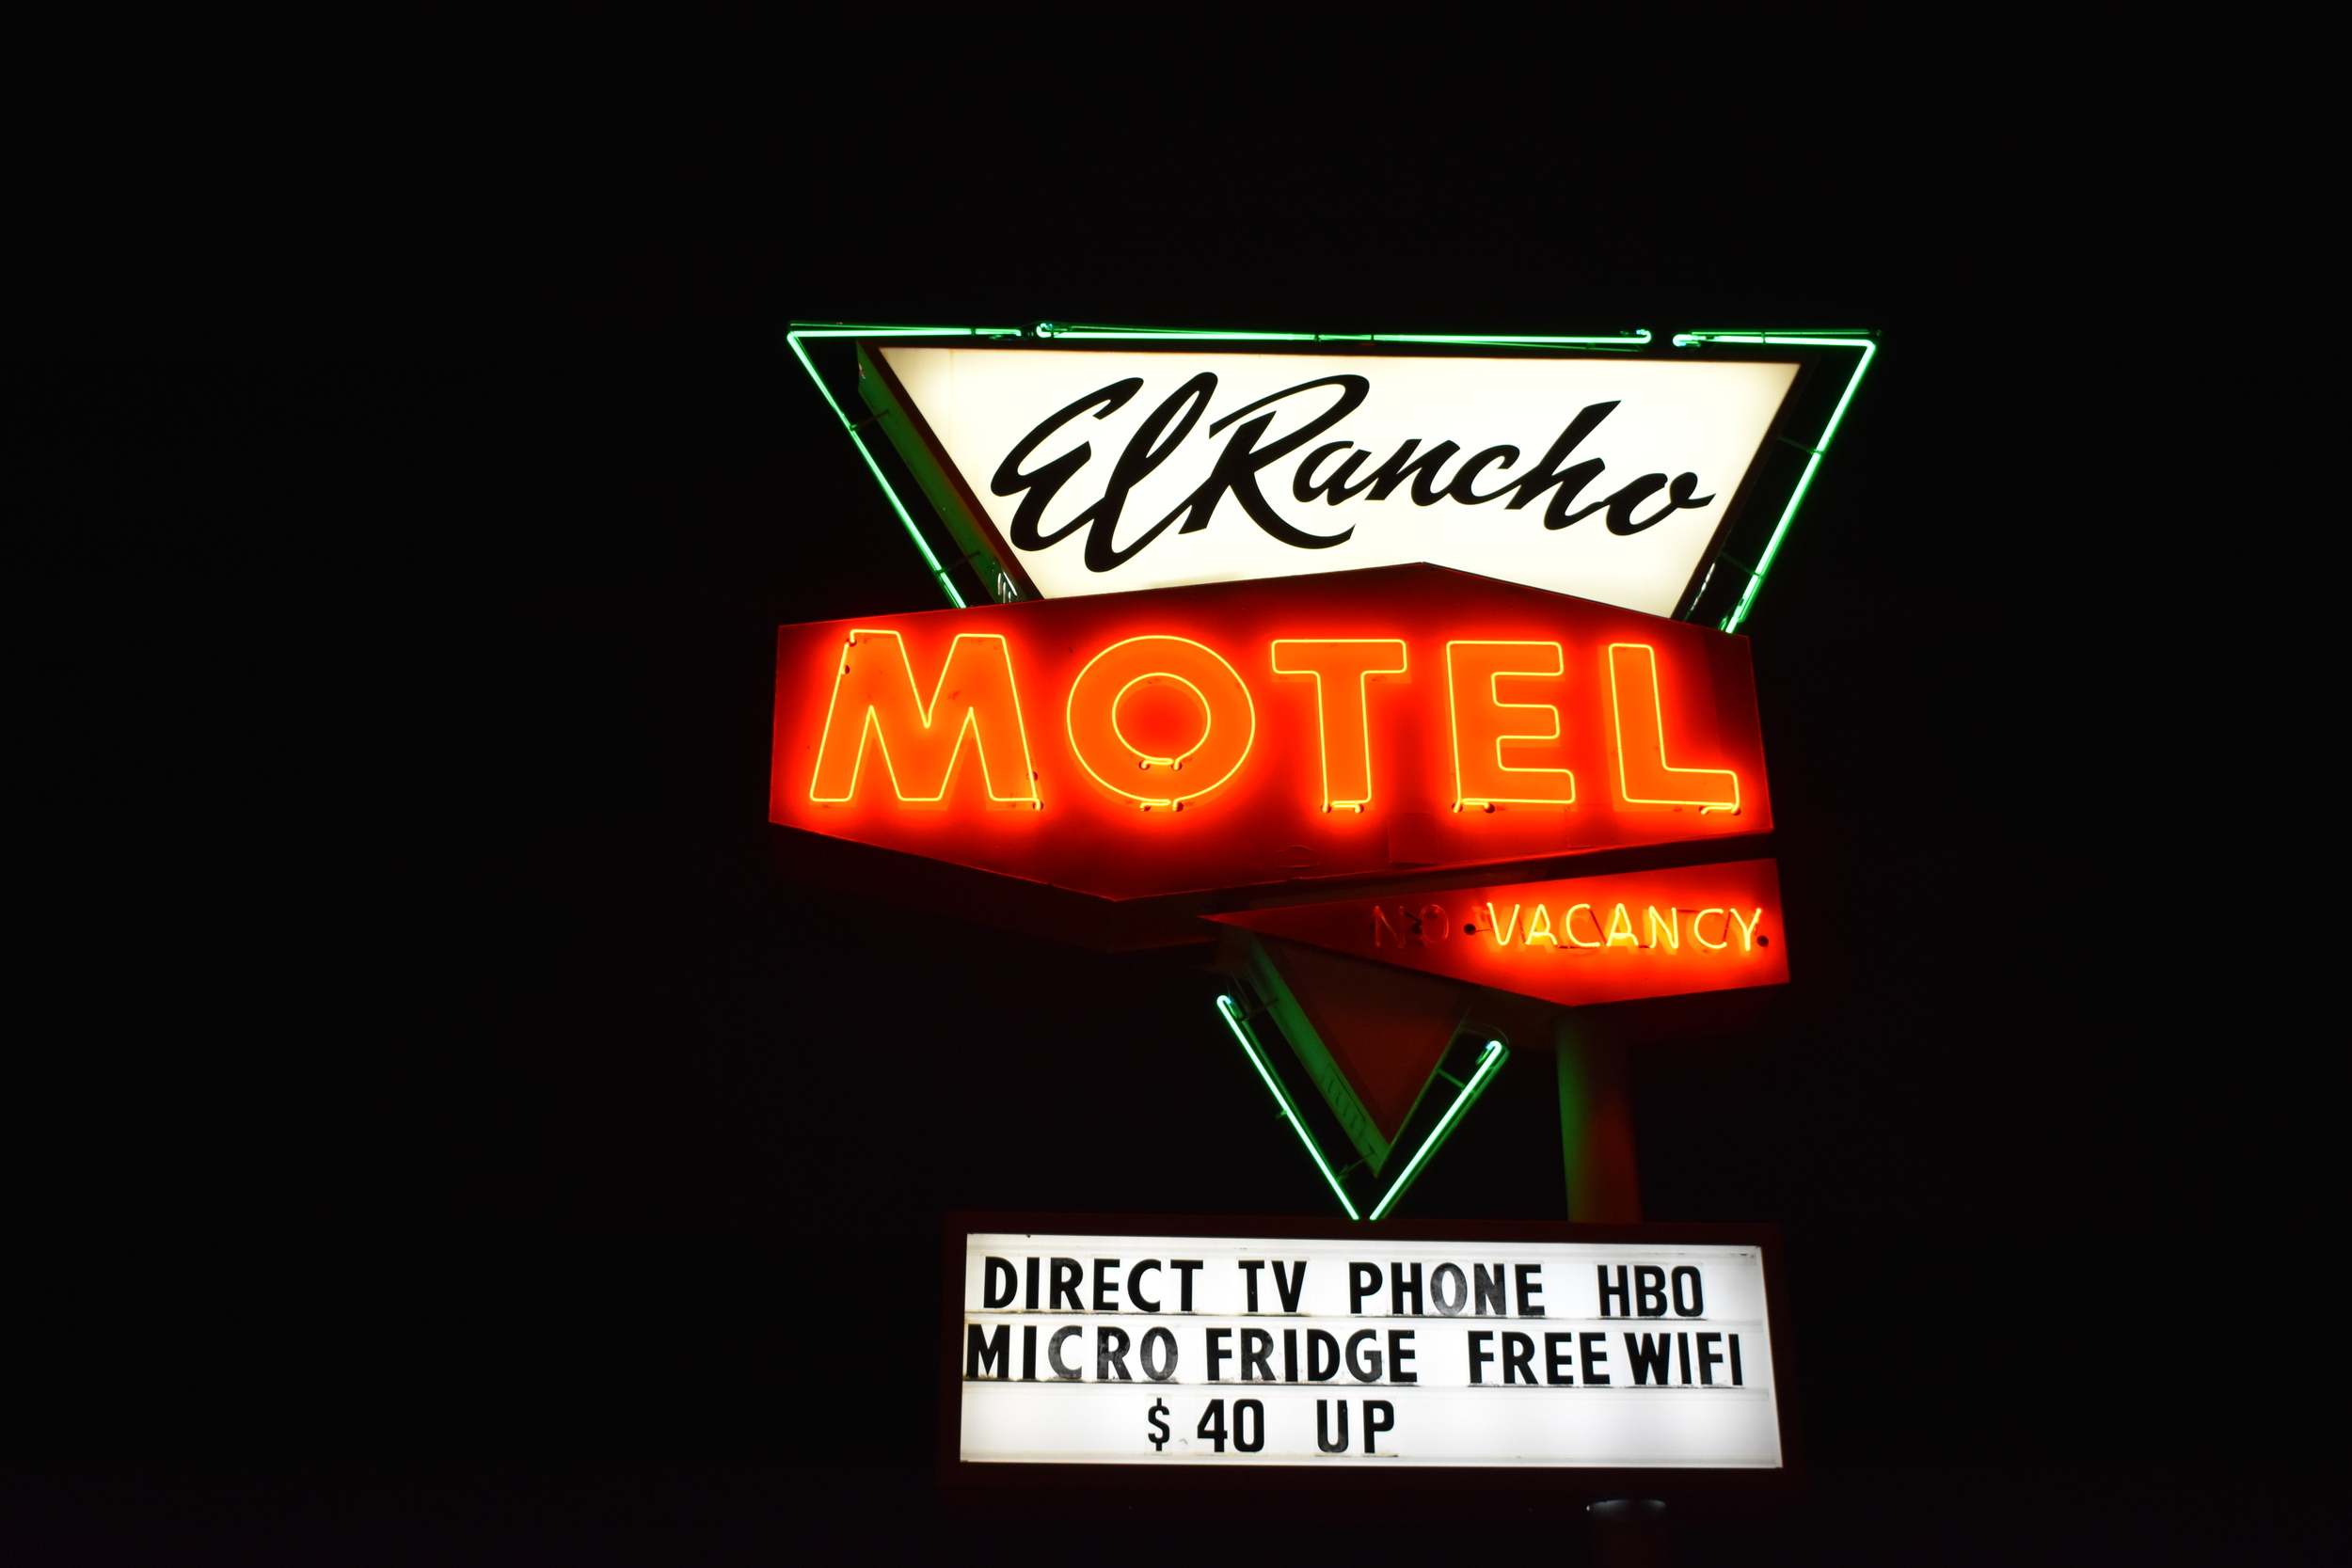 El Rancho Motel, Ely, Nevada